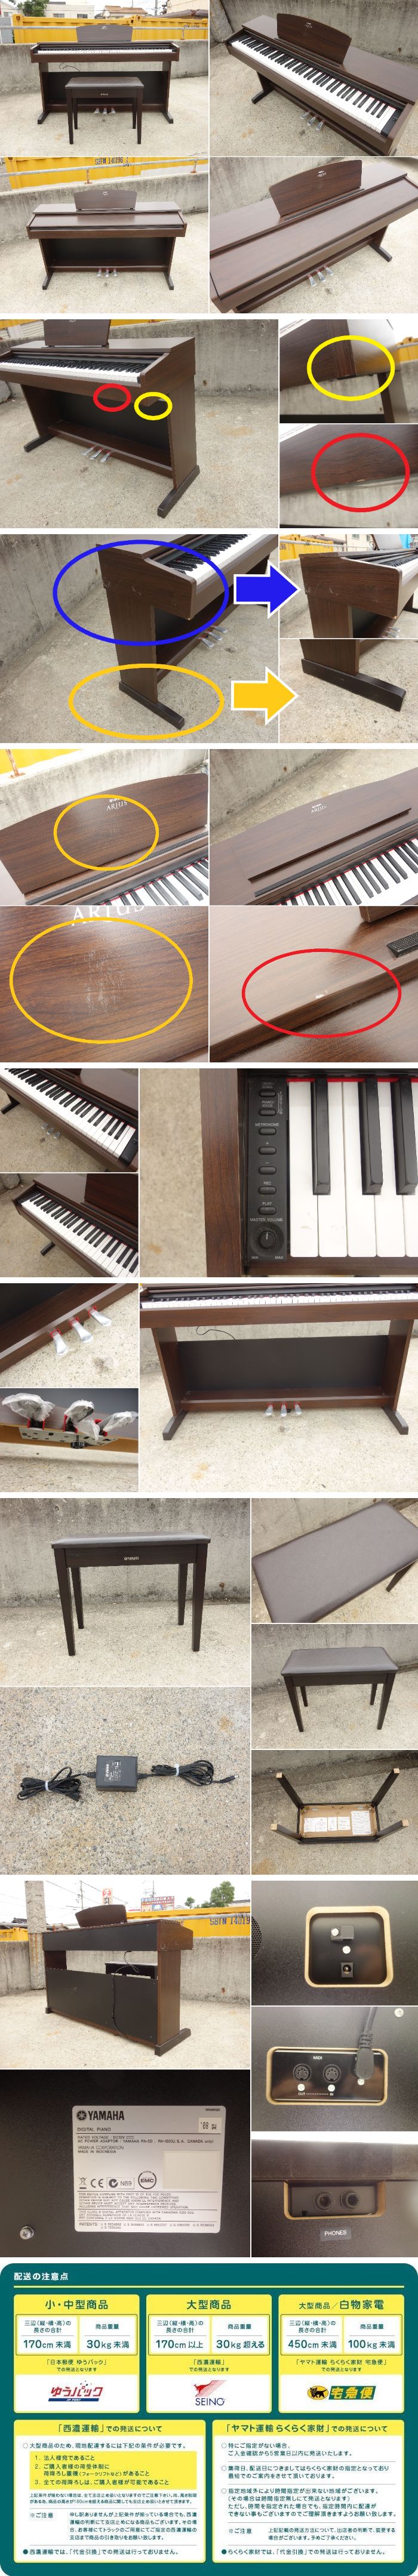 HOT大得価D▼ヤマハ デジタルピアノ 電子ピアノ キーボード アリウス ARIUS 88鍵盤 椅子 ダークアルダー調 YDP-140 (30729) ヤマハ